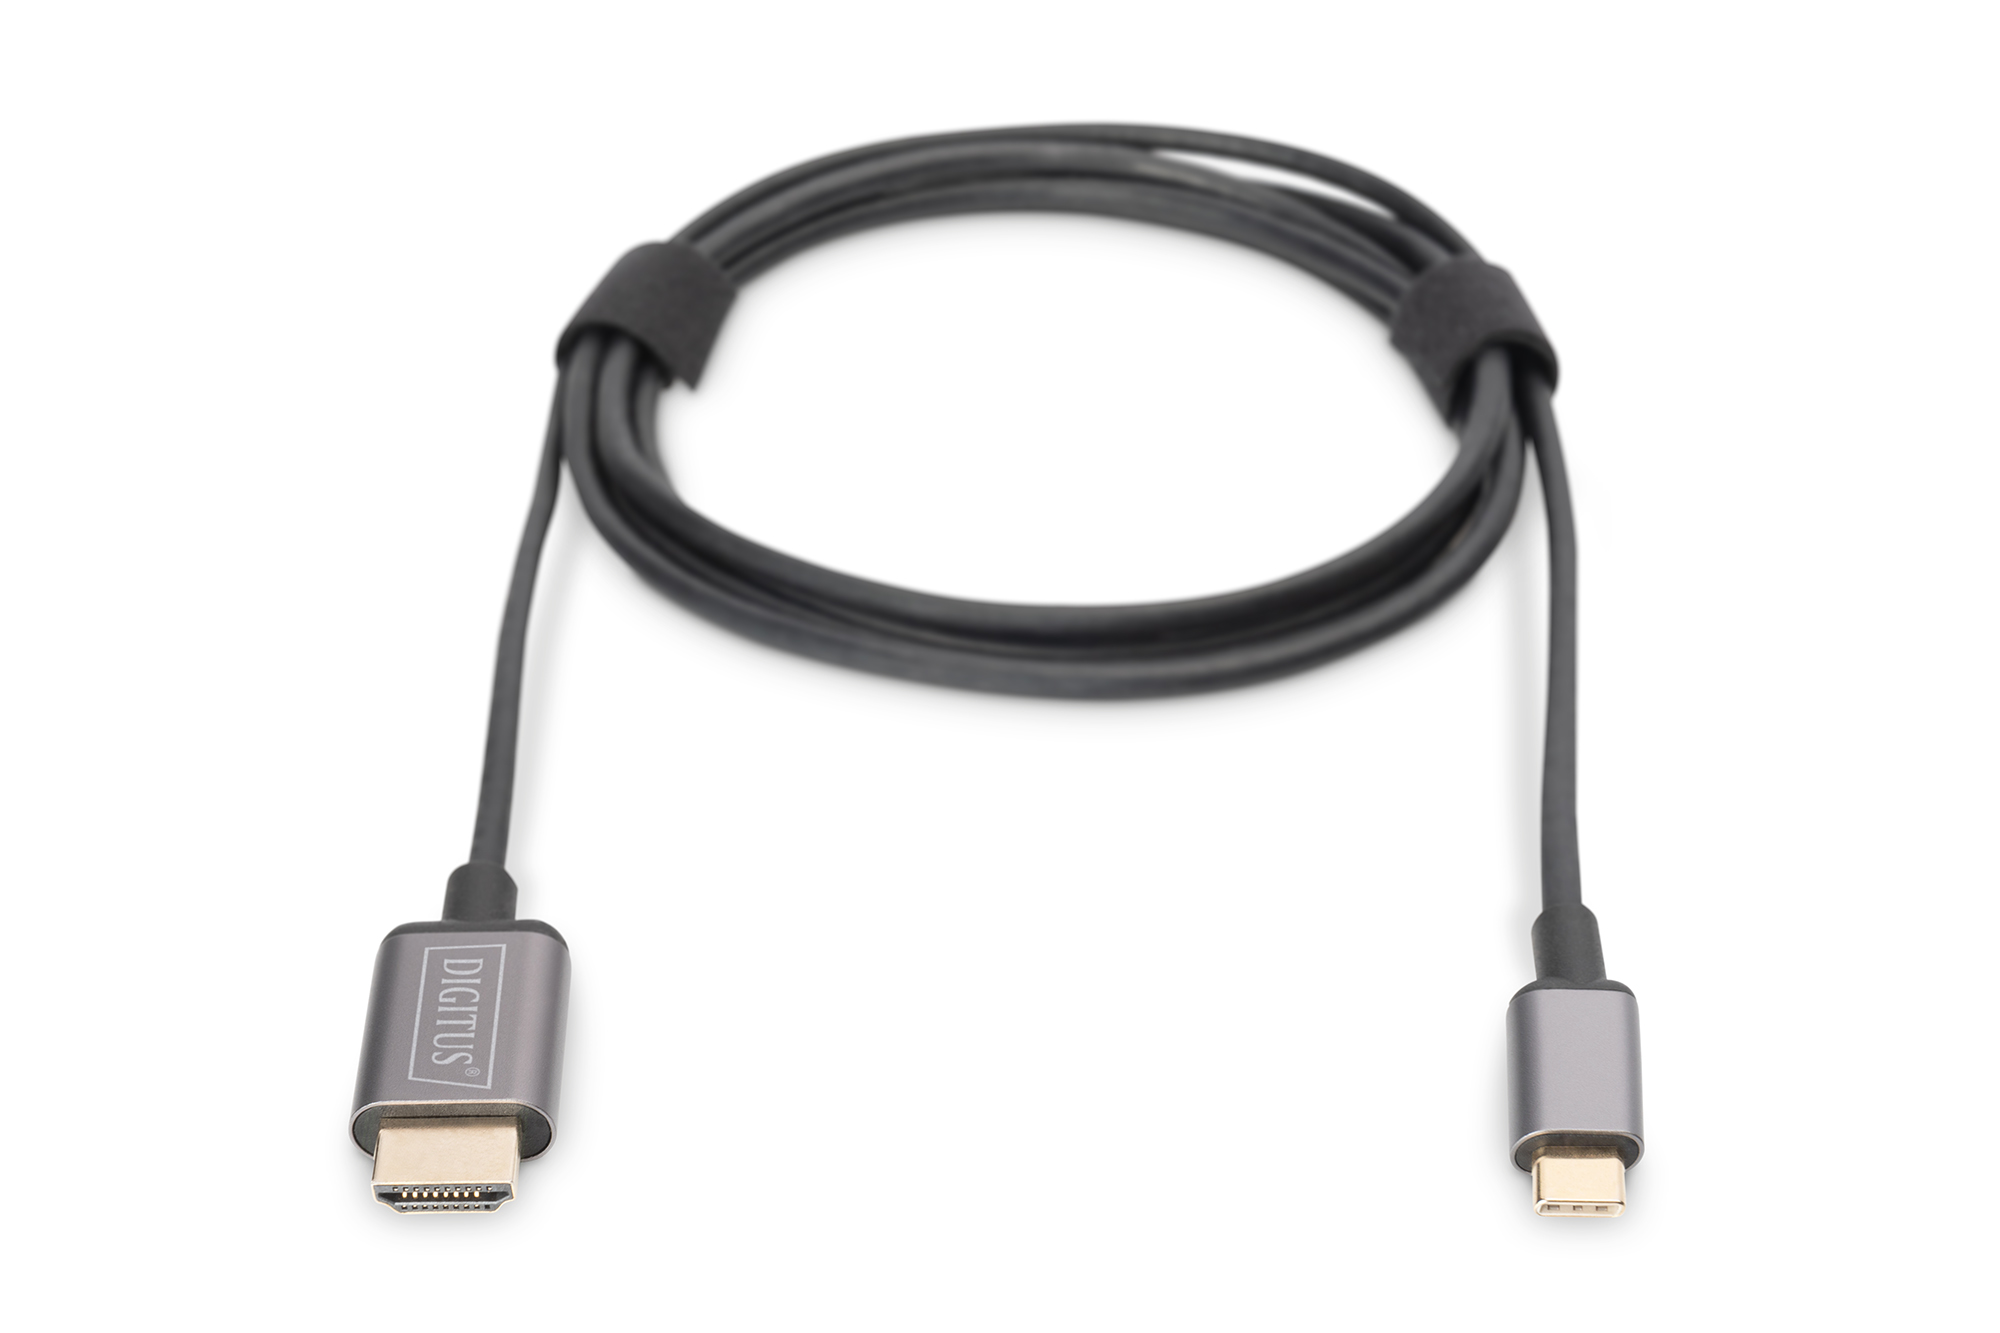 Adaptador de Video USB C a HDMI/VGA 4K - Adaptadores de vídeo USB